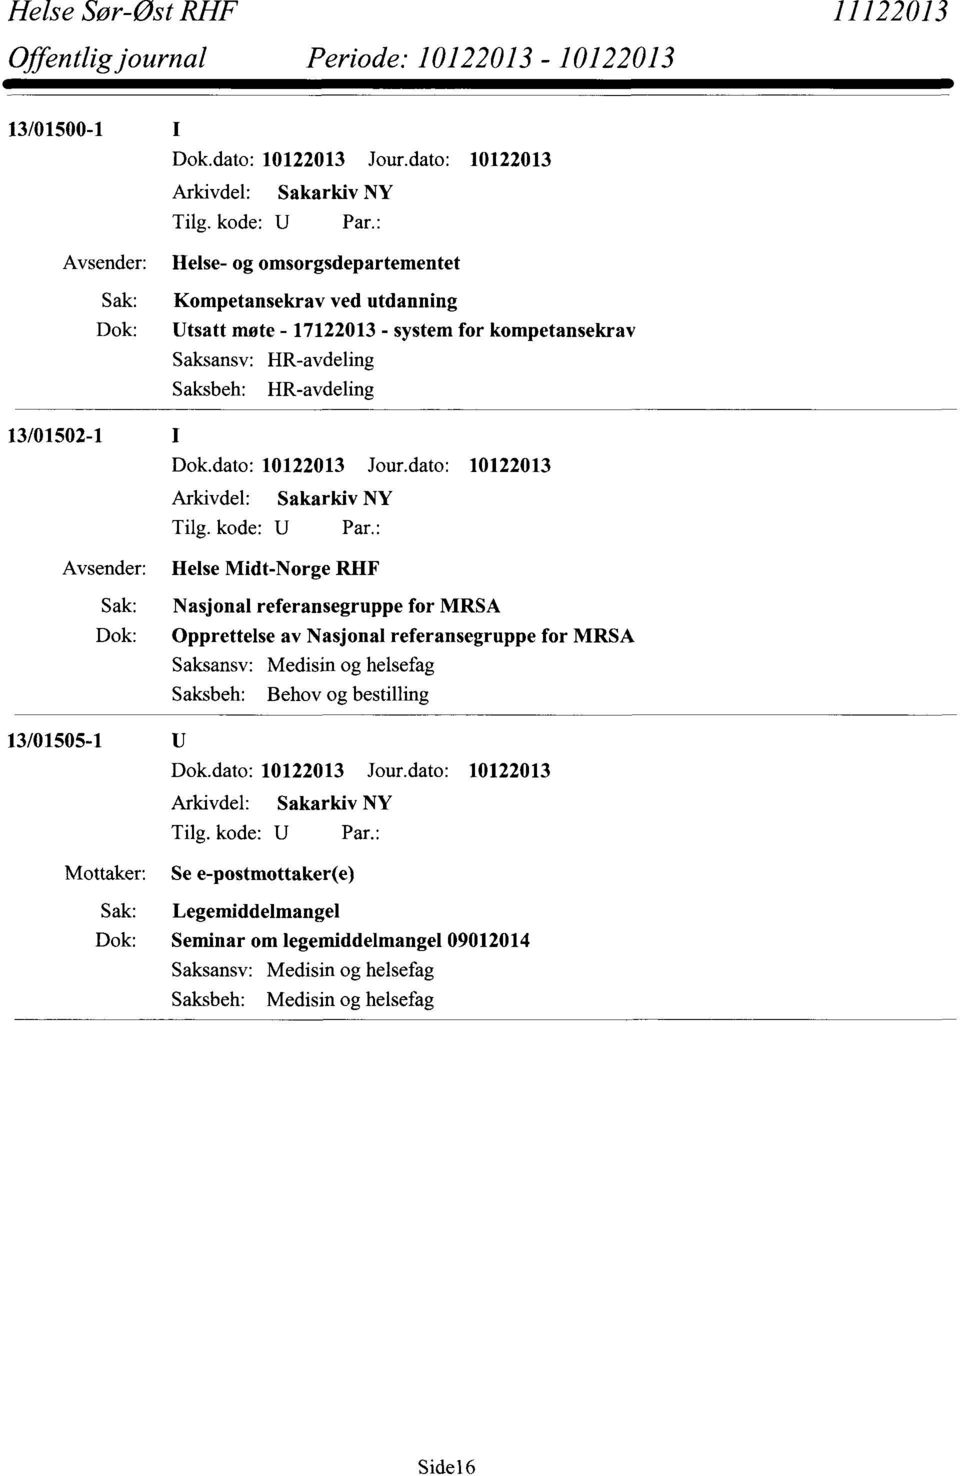 referansegruppe for MRSA Opprettelse av Nasjonal referansegruppe for MRSA Saksansv: Medisin og helsefag Saksbeh: Behov og bestilling 13/01505-1